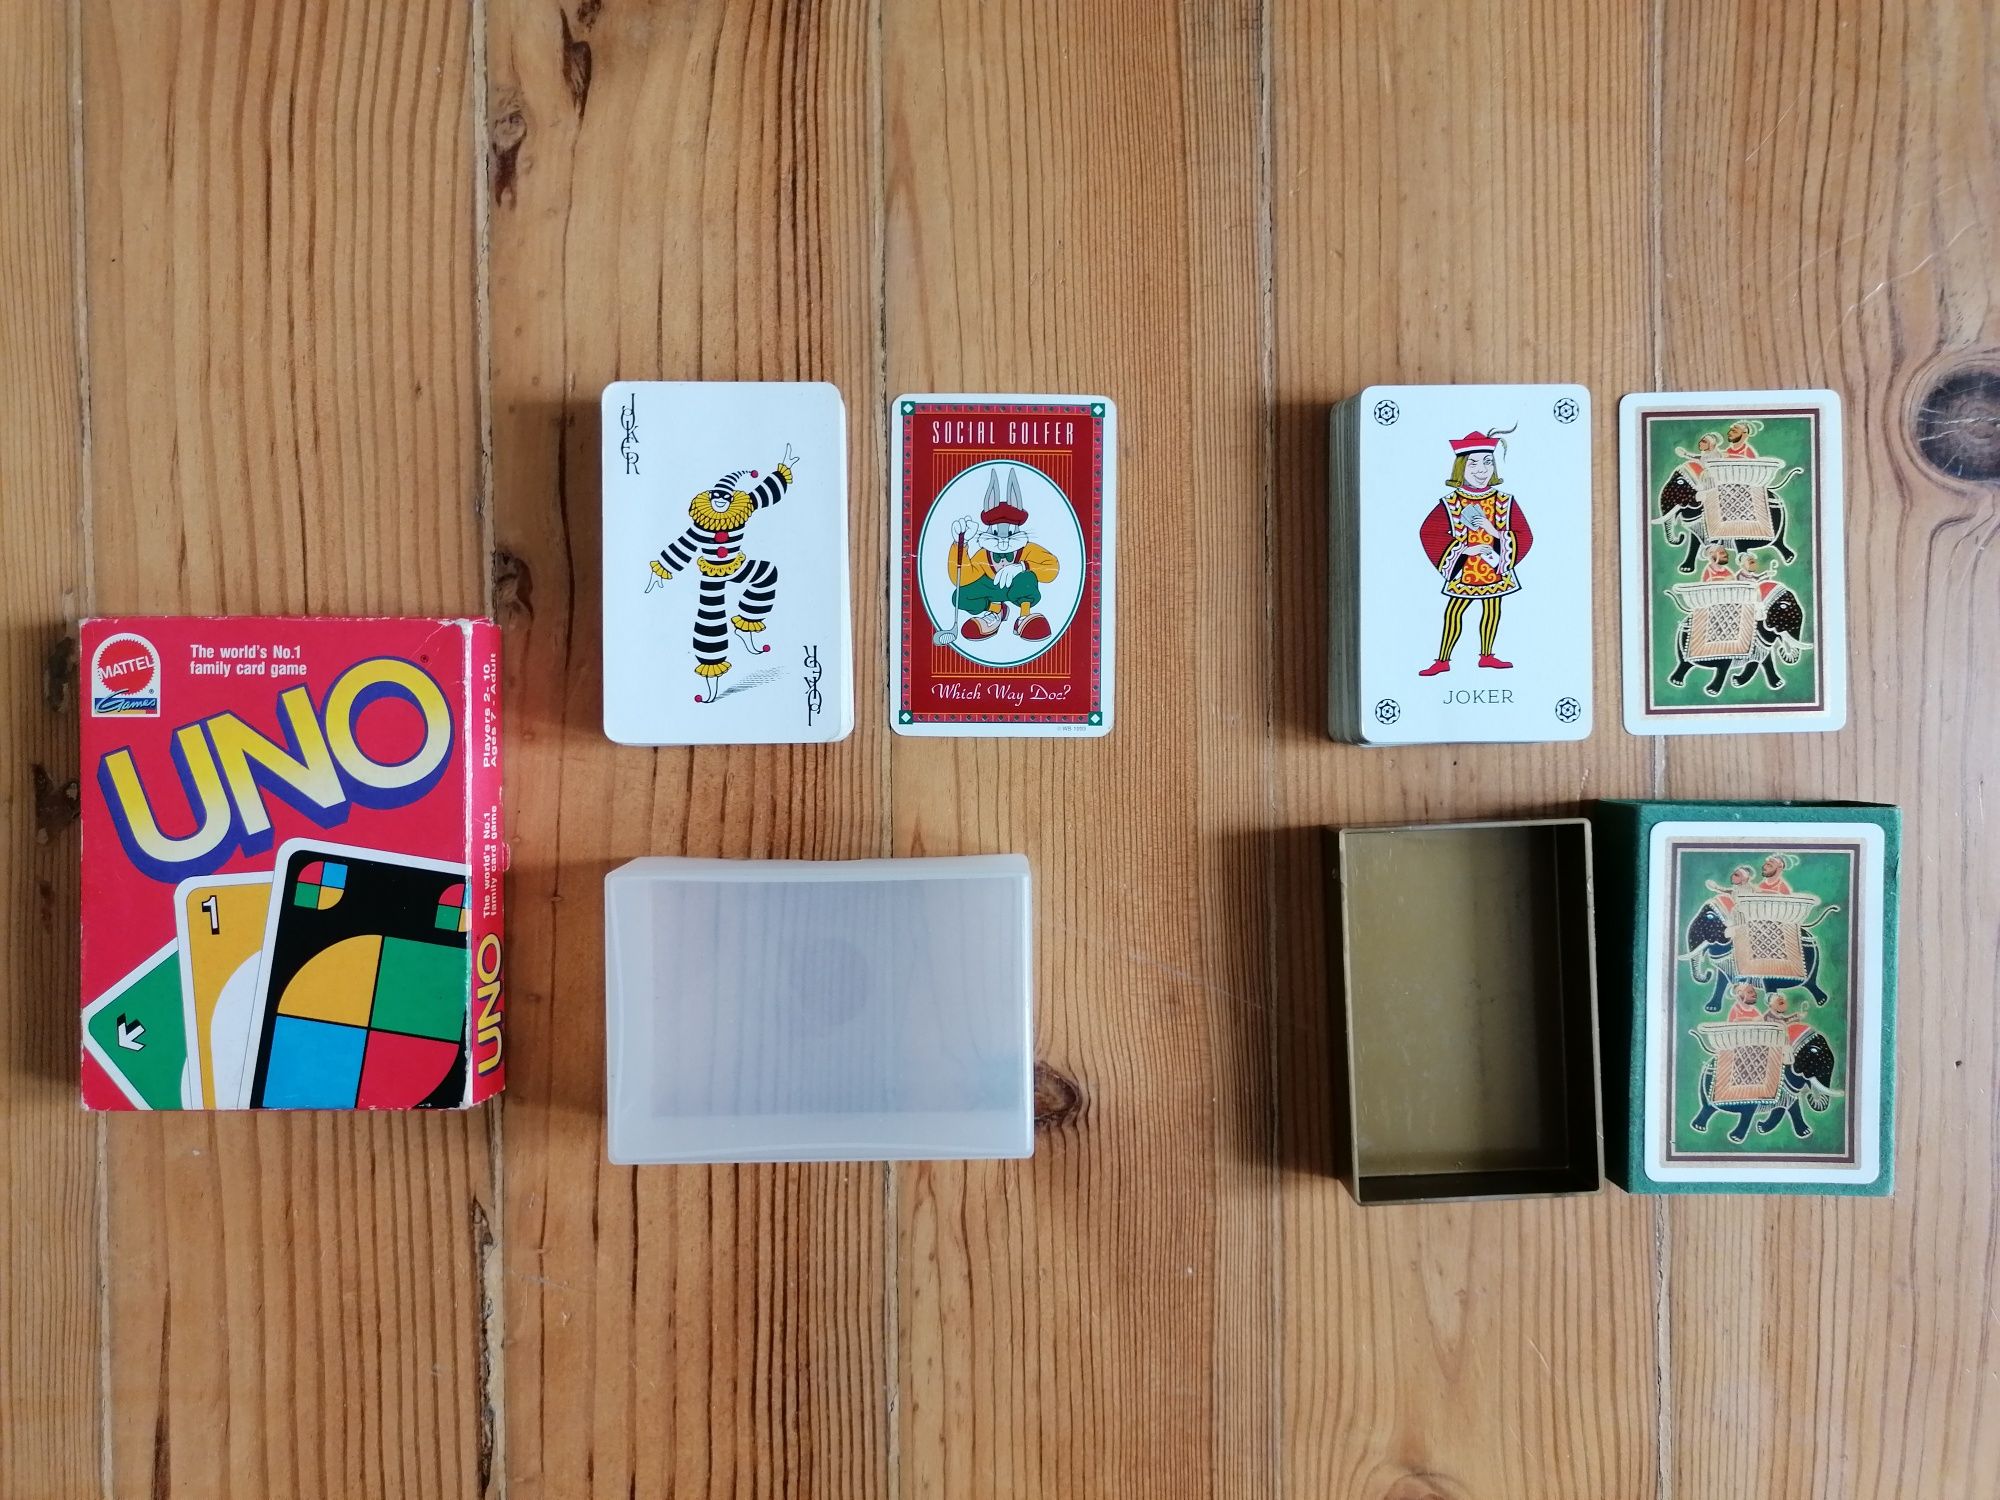 2 x Cartas (1 do Bugs Bunny tema golf) e jogo de cartas Uno